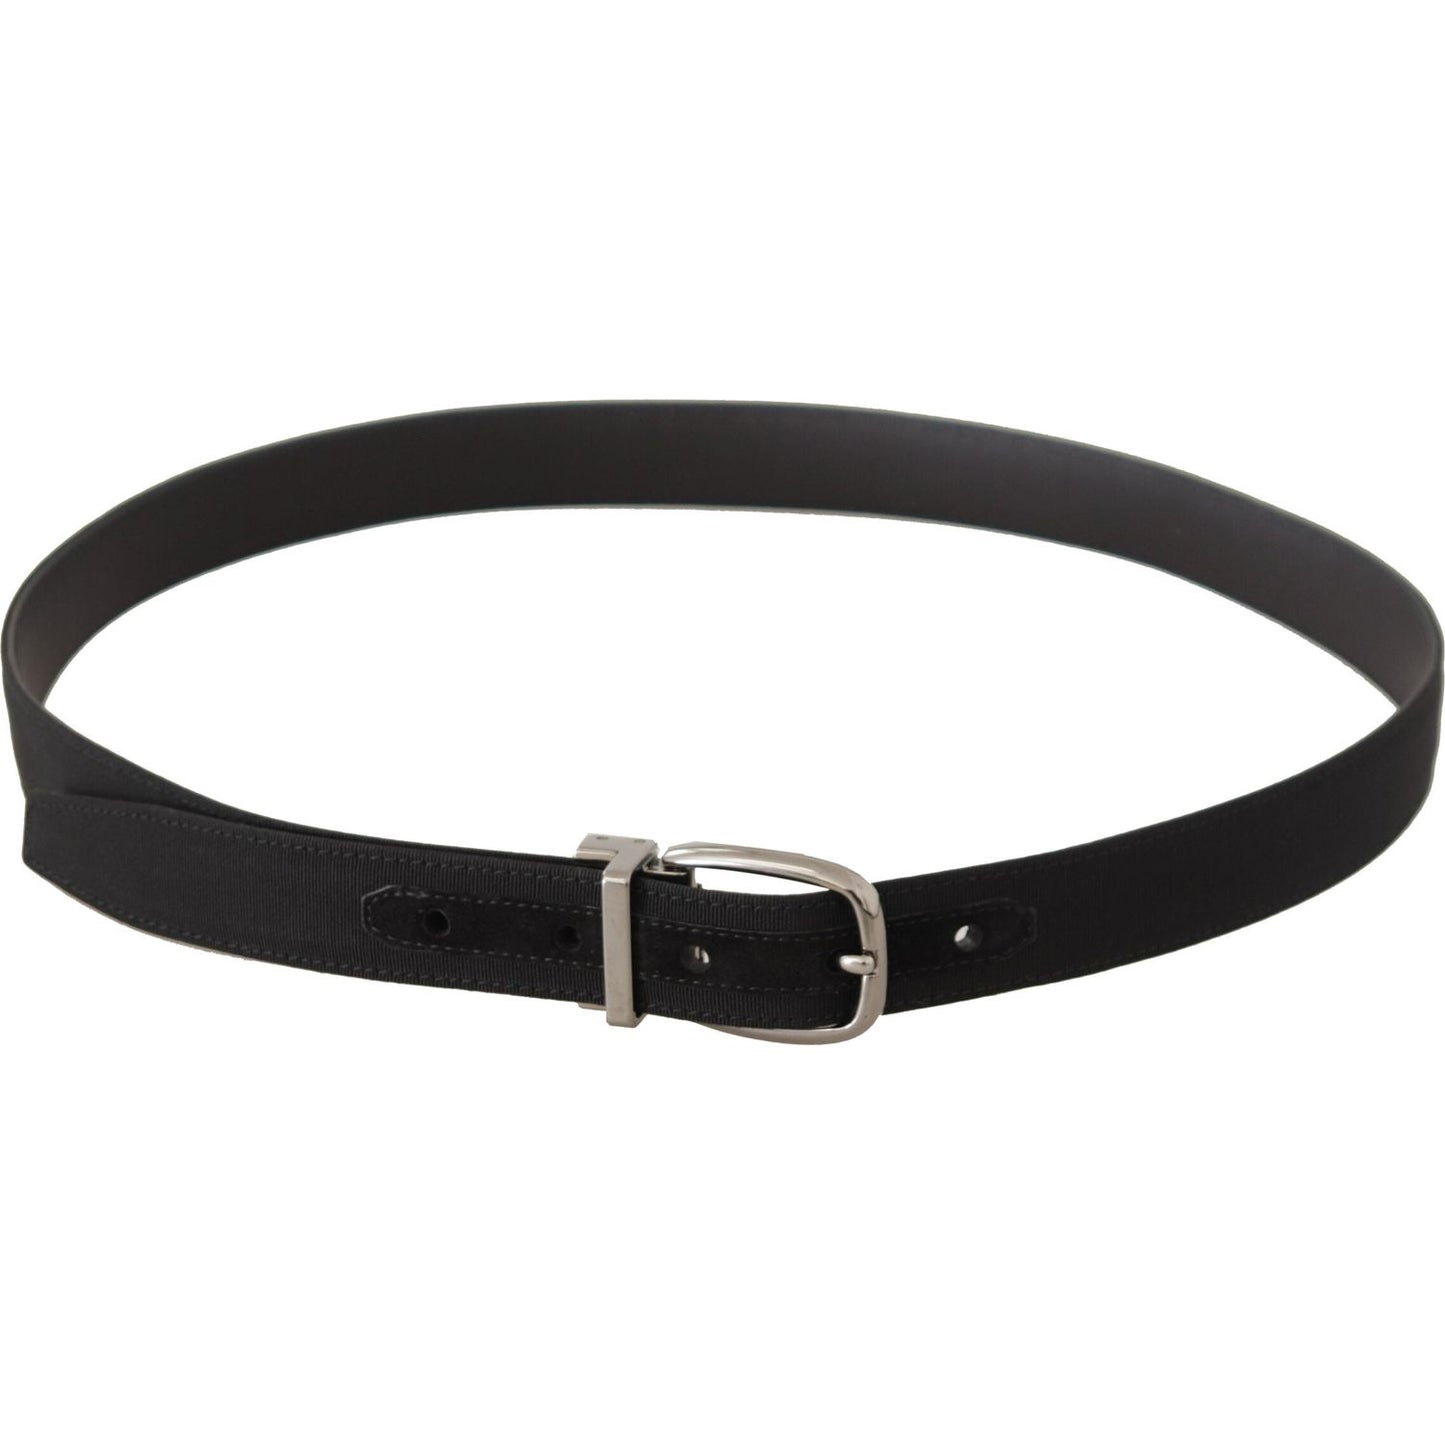 Dolce & Gabbana Elegant Black Leather Designer Belt black-grosgrain-leather-silver-tone-metal-buckle-belt IMG_0394-scaled-90418fc5-cd0.jpg